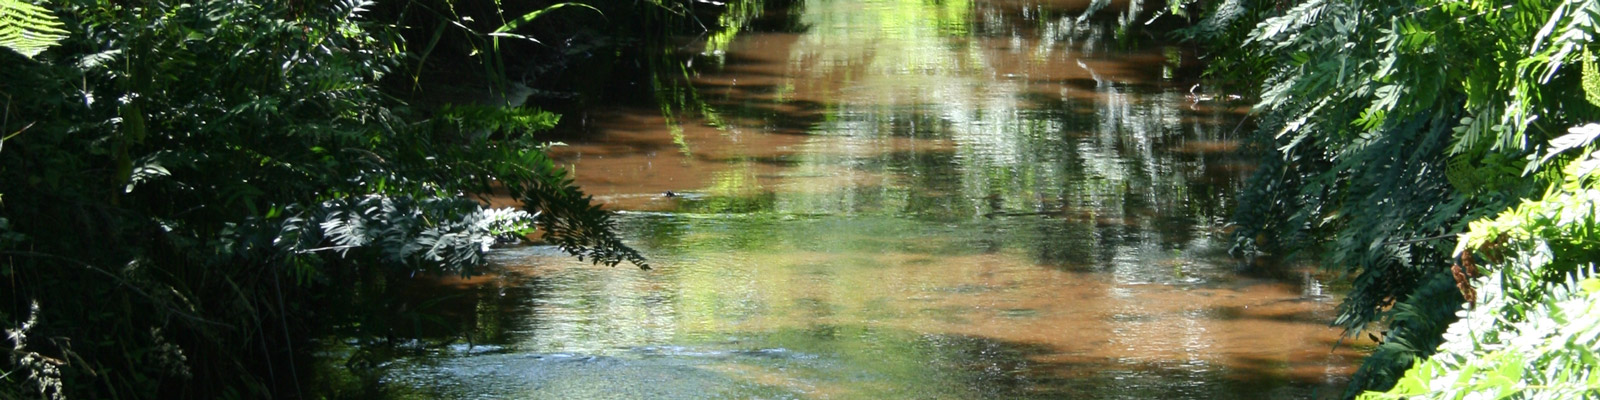 Journée mondiale des zones humides par Parc naturel régional Médoc